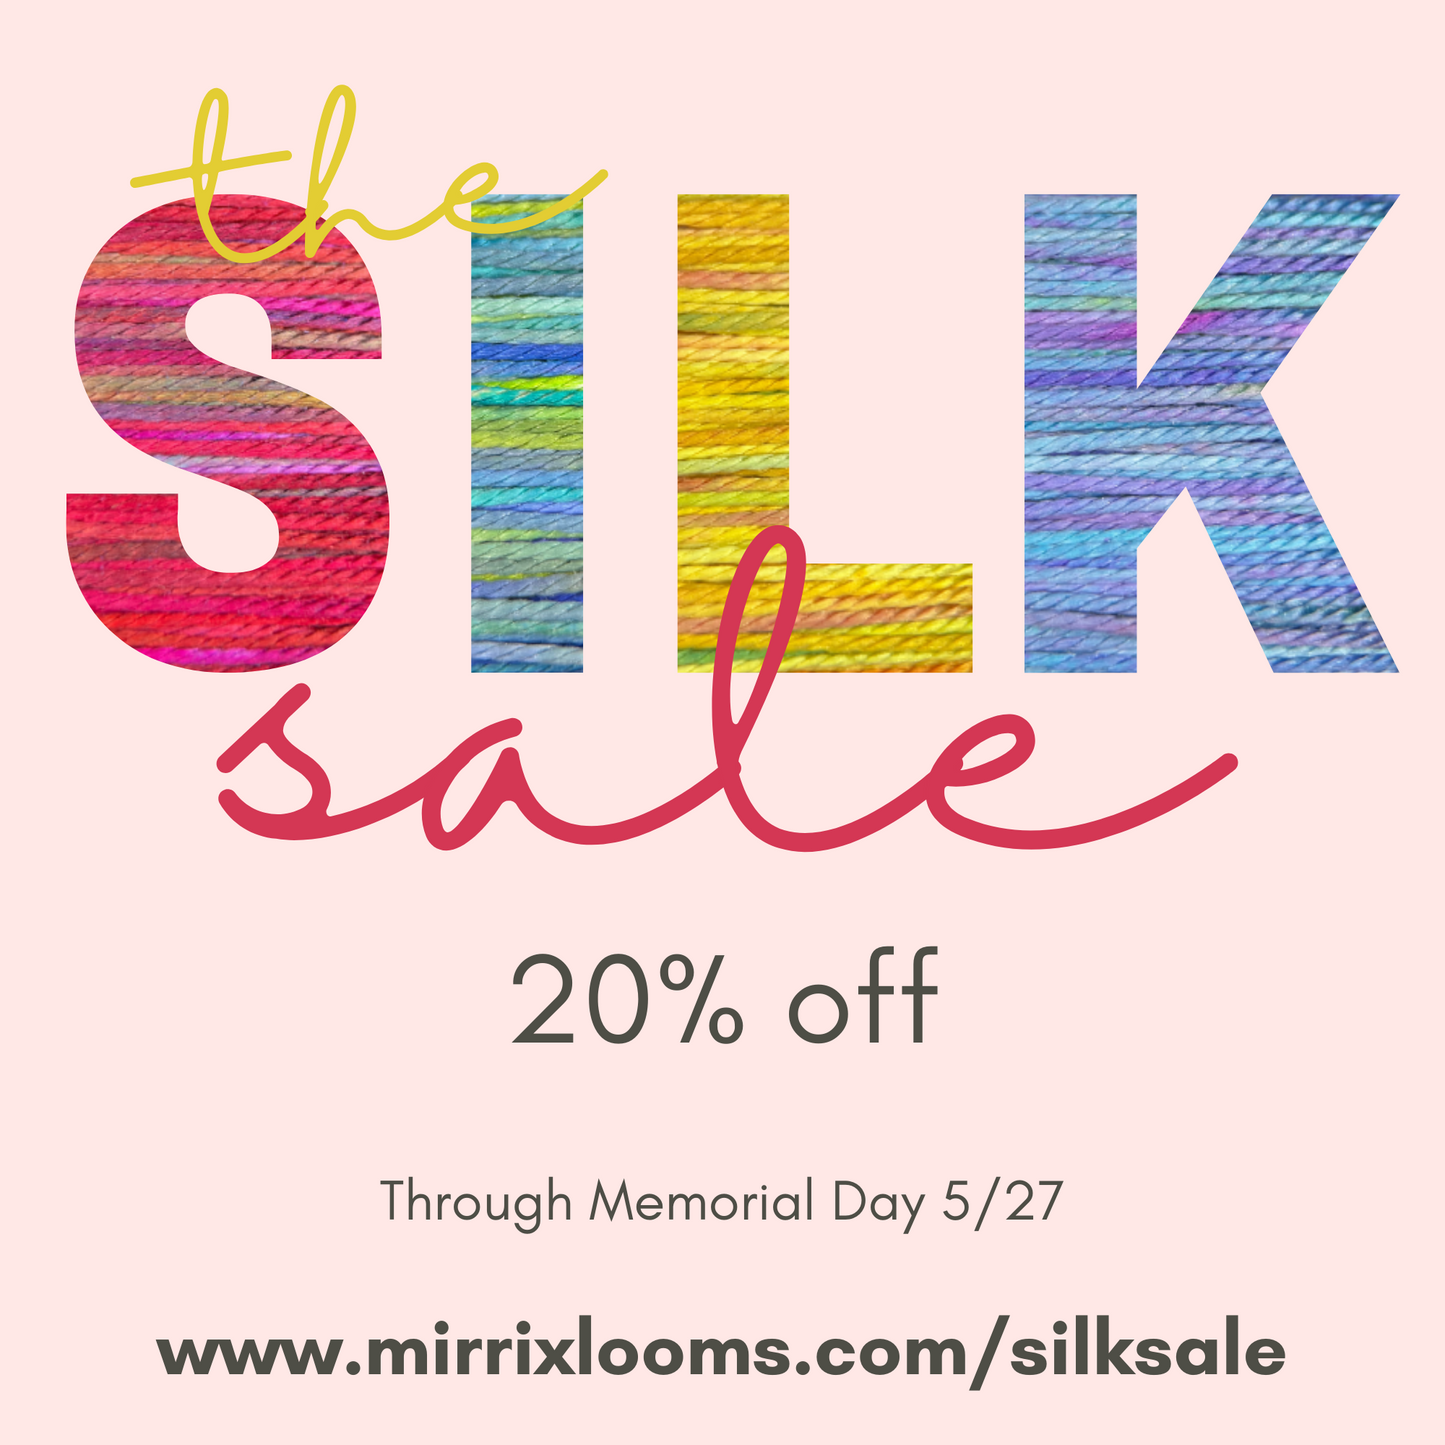 The Silk Sale